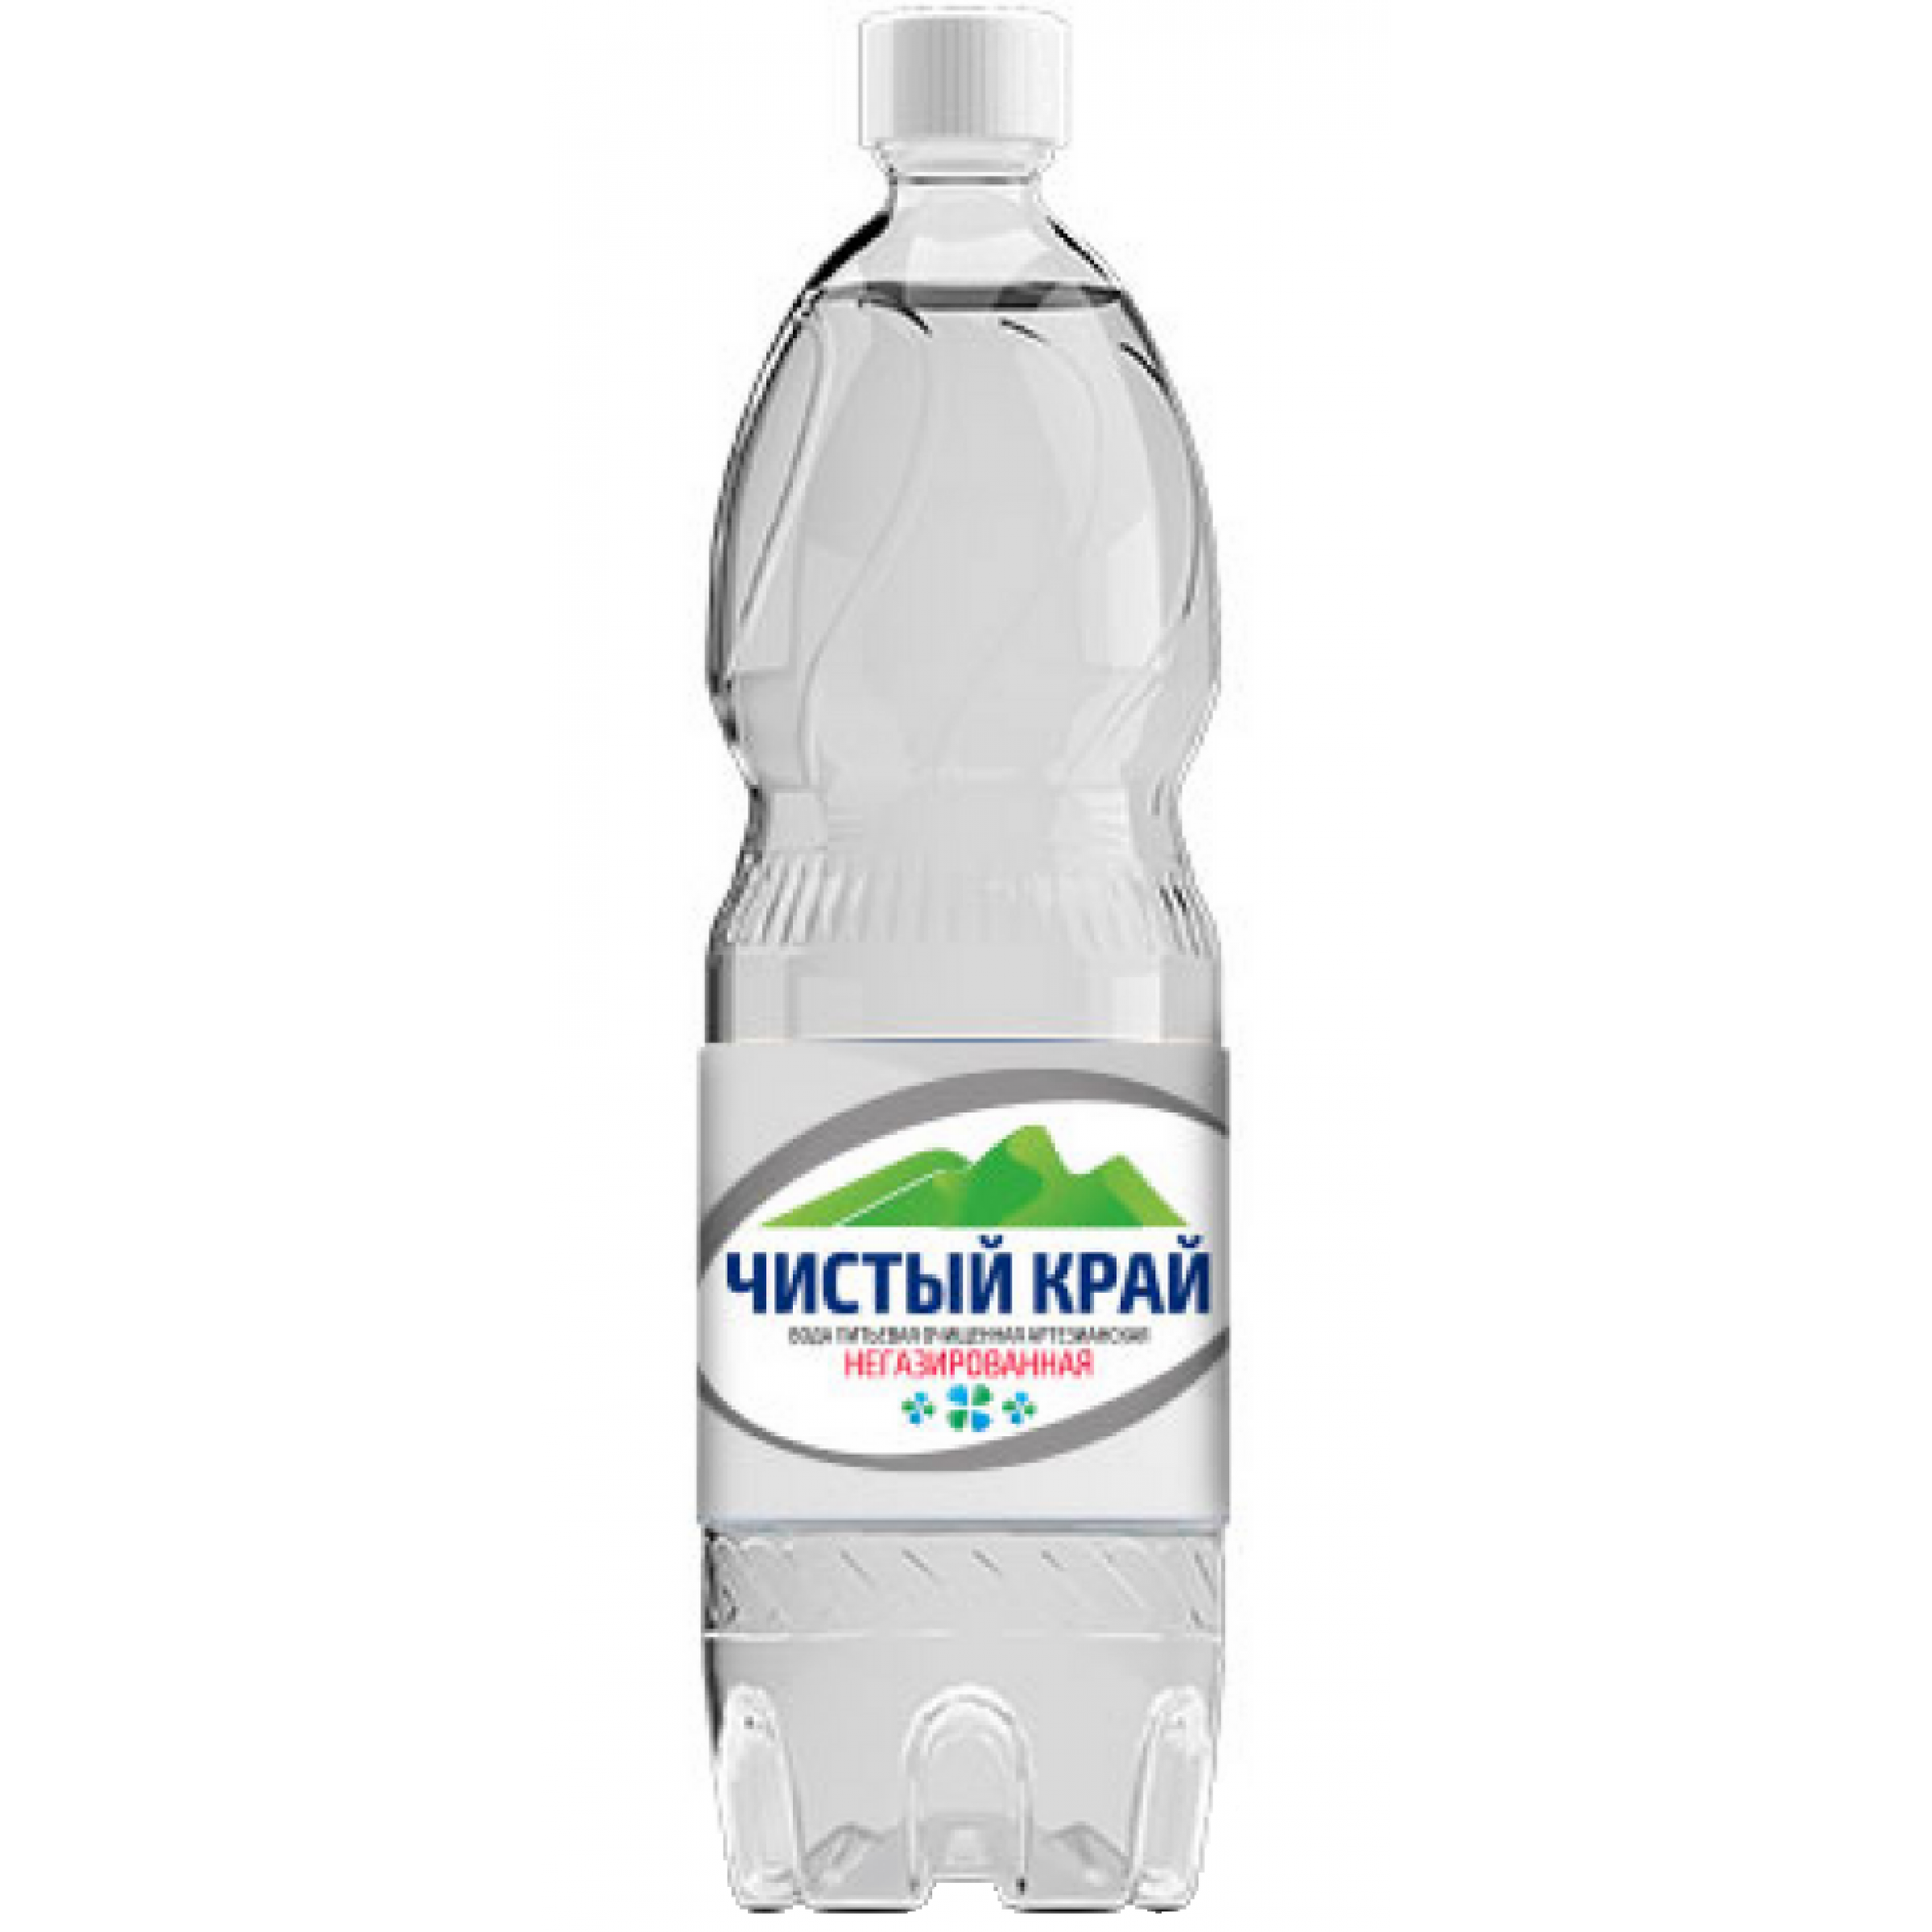 Питьевая вода Чистый край негазированная, 0,6 л